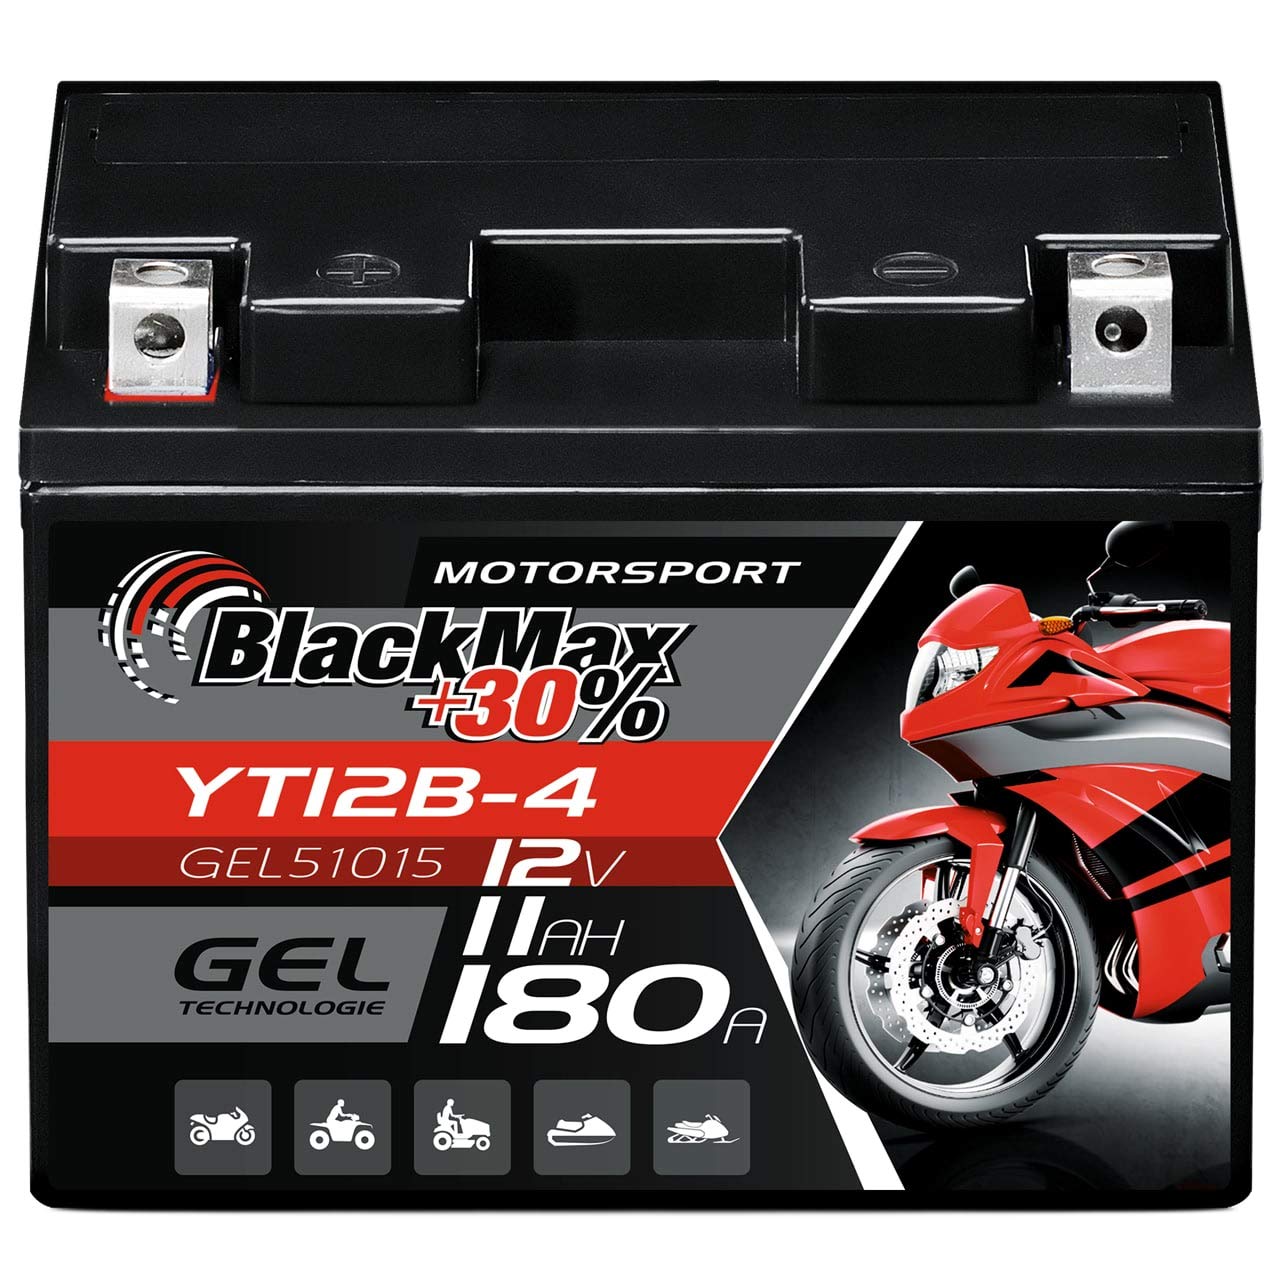 BlackMax GT12B-4 Motorradbatterie GEL 12V 11Ah YT12B-4 Batterie 51015 CT12B-4 von BlackMax